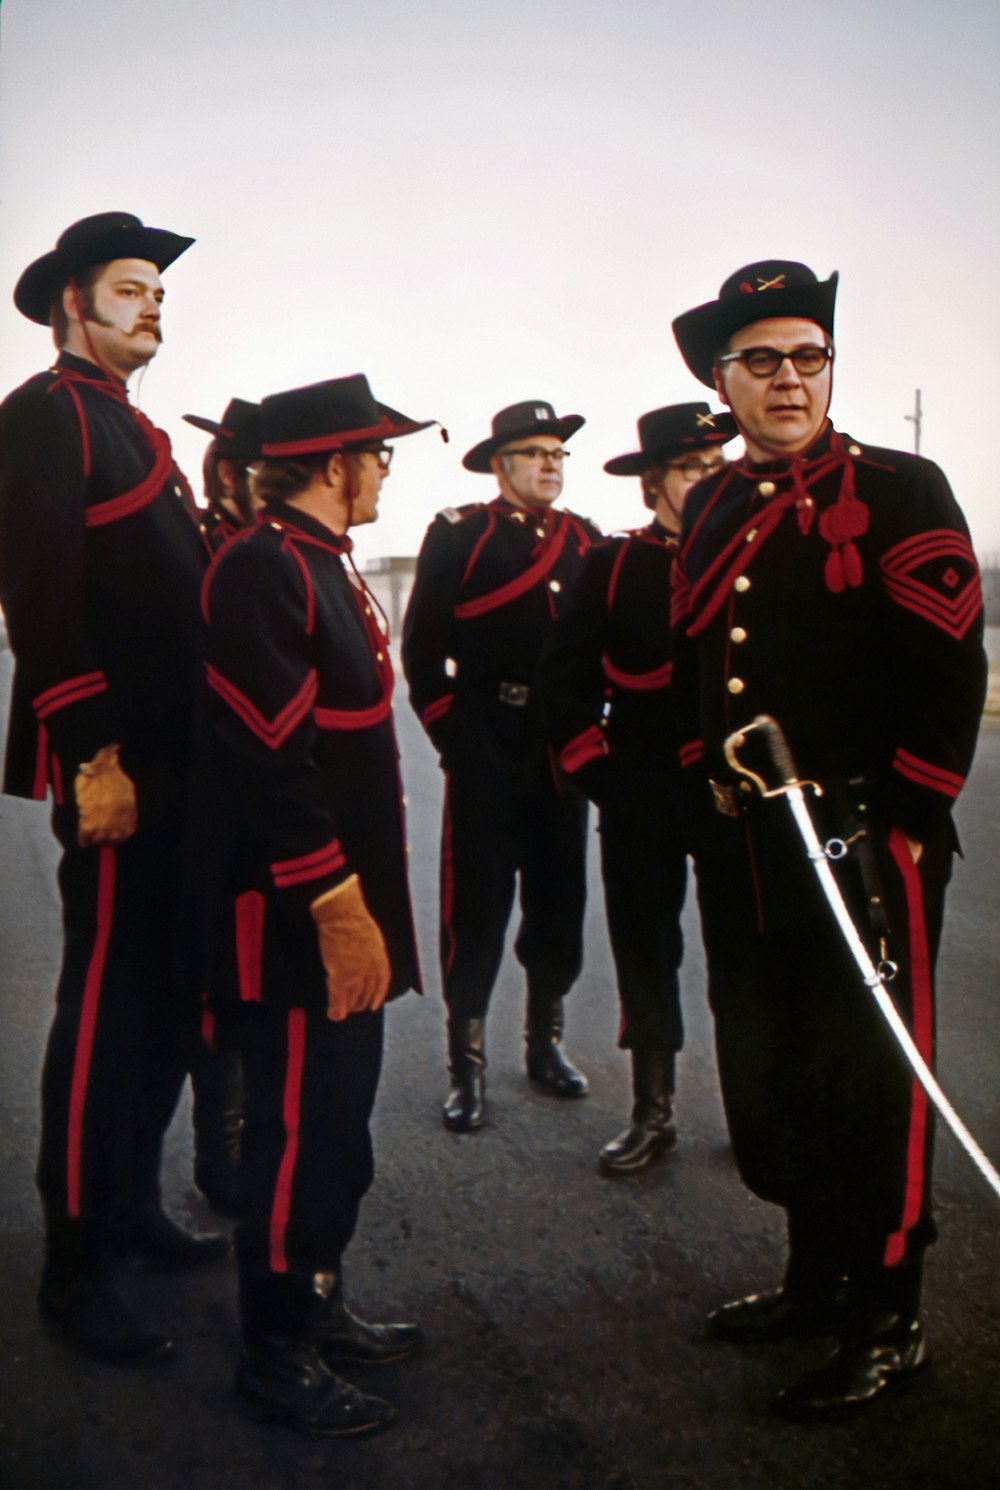 eine Gruppe von Männern in Uniform, die nebeneinander stehen